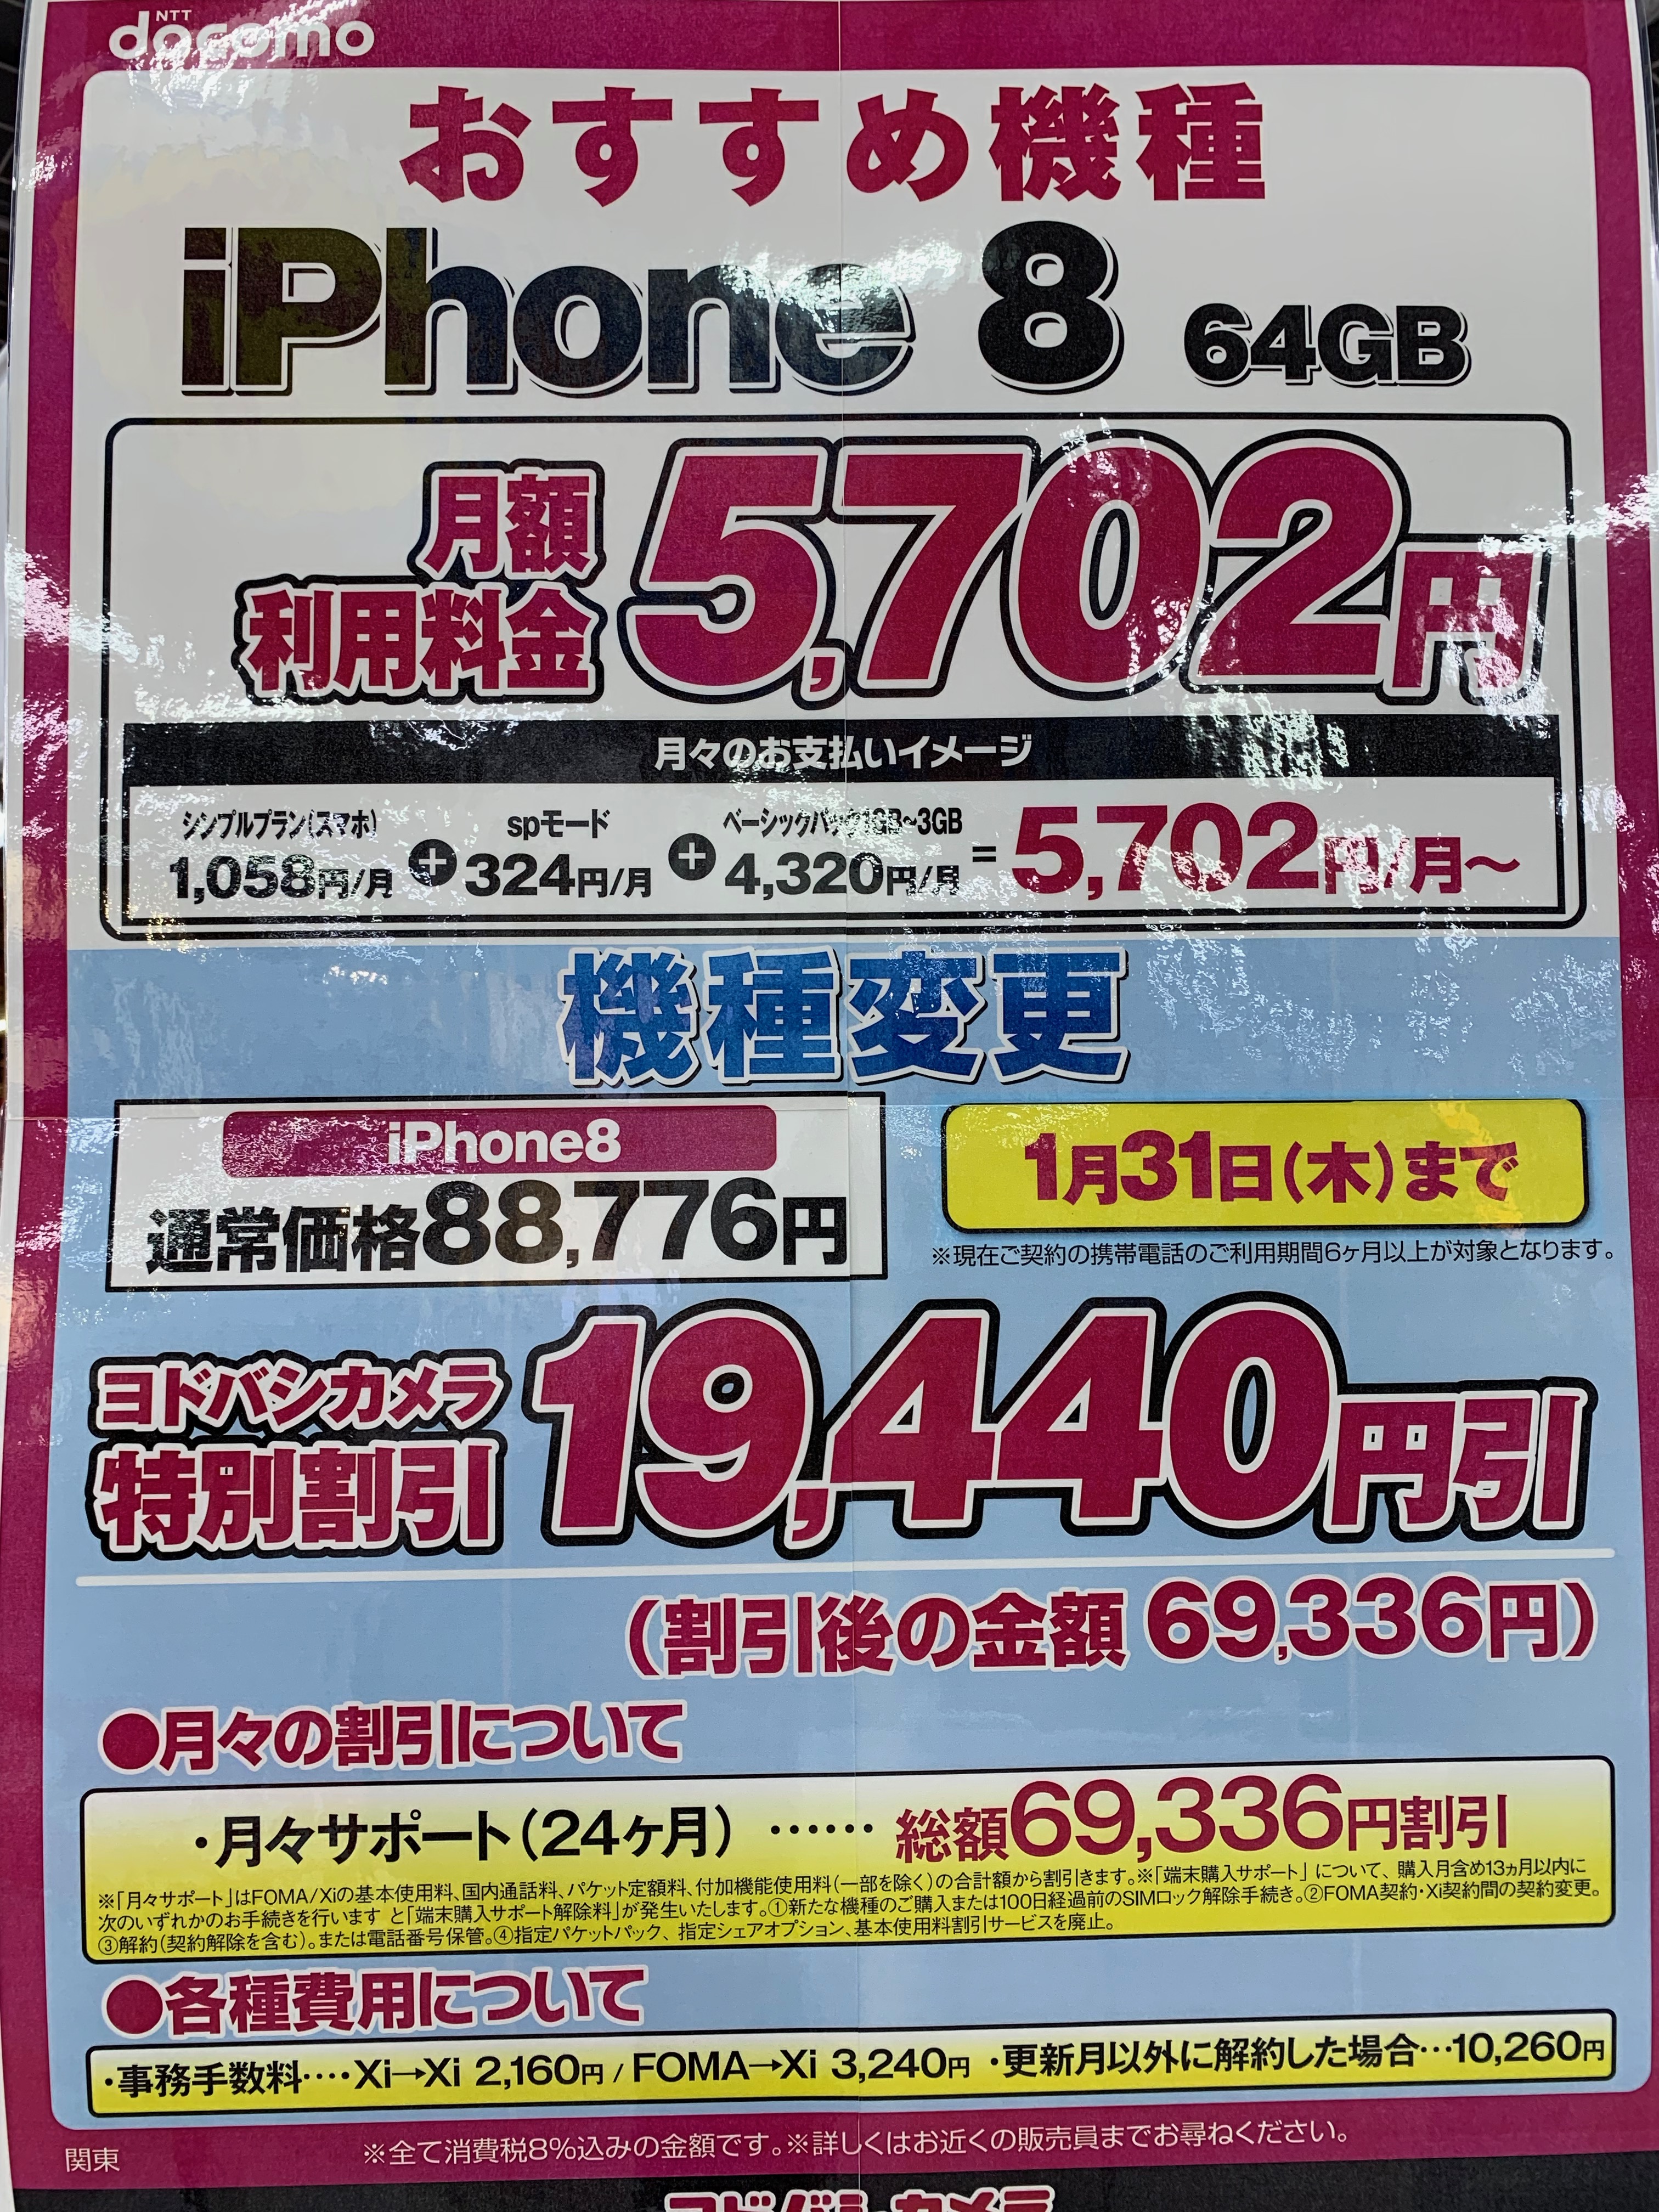 ヨドバシアキバ P Pro Iphone 8が実質0円